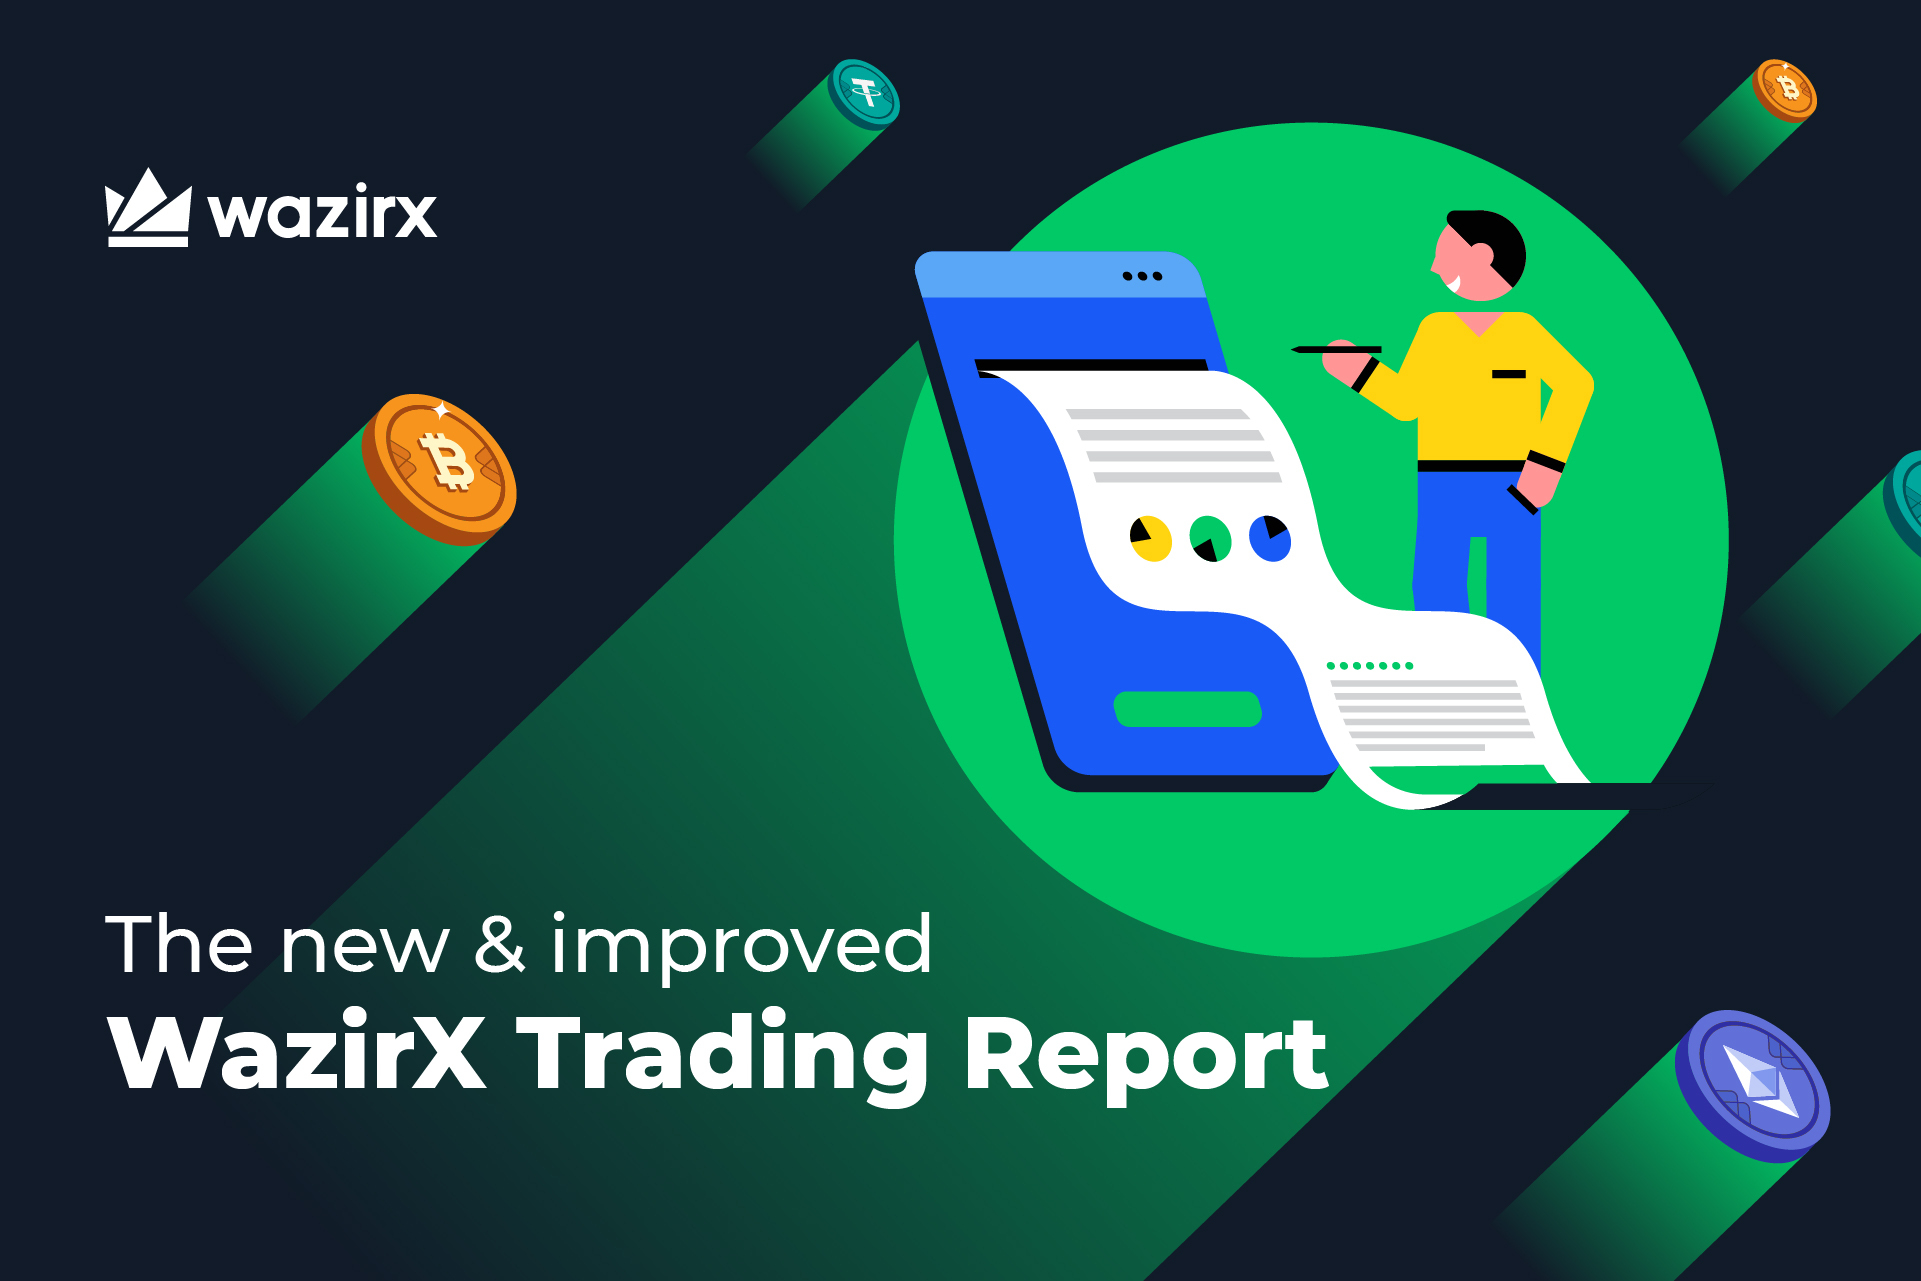 Understanding The WazirX Trading Report Is Easier Now